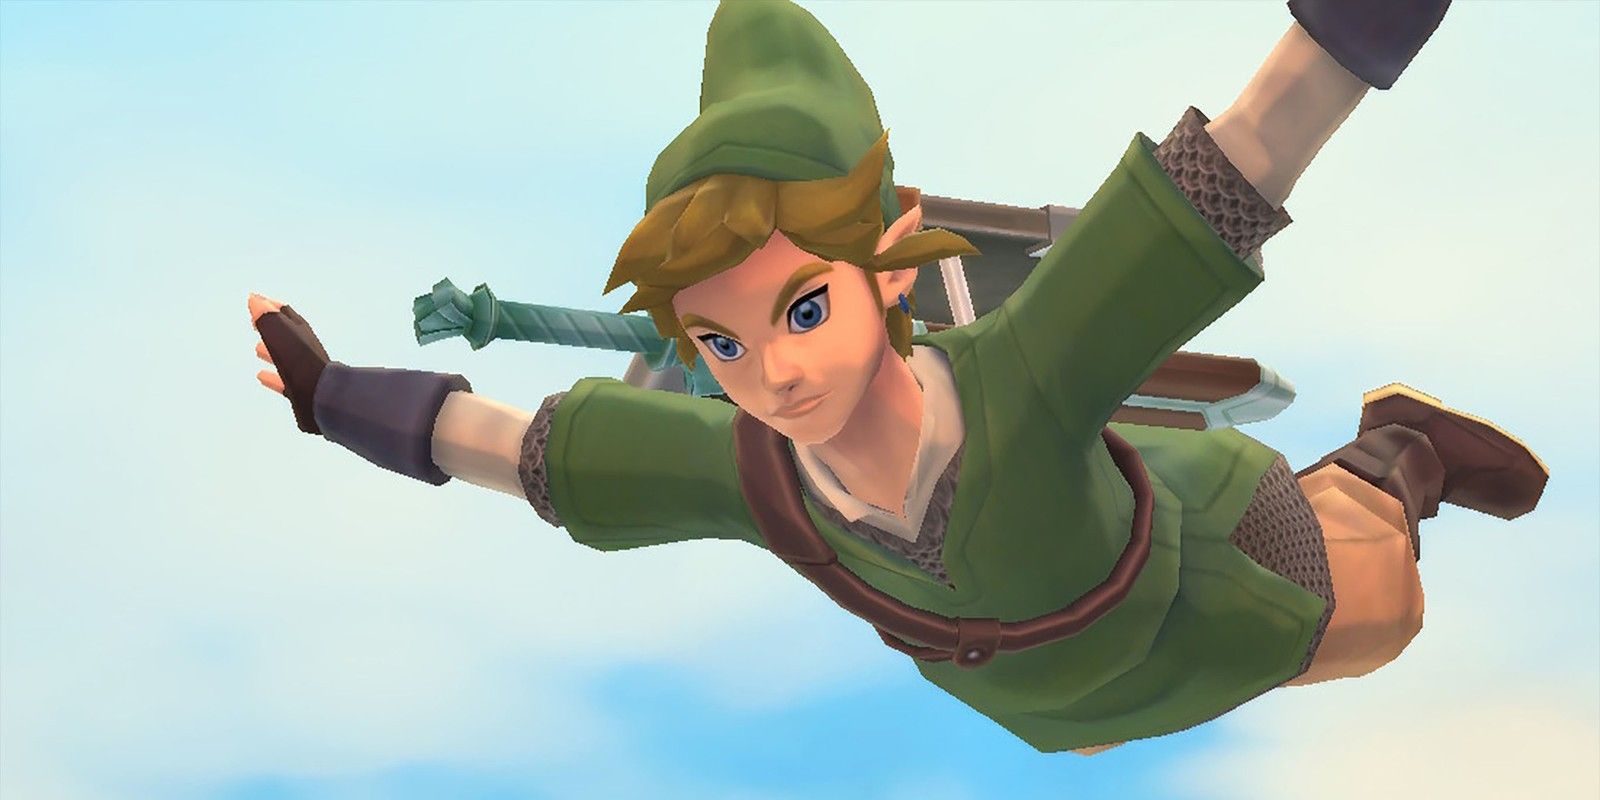 Link falling in Skyward Sword